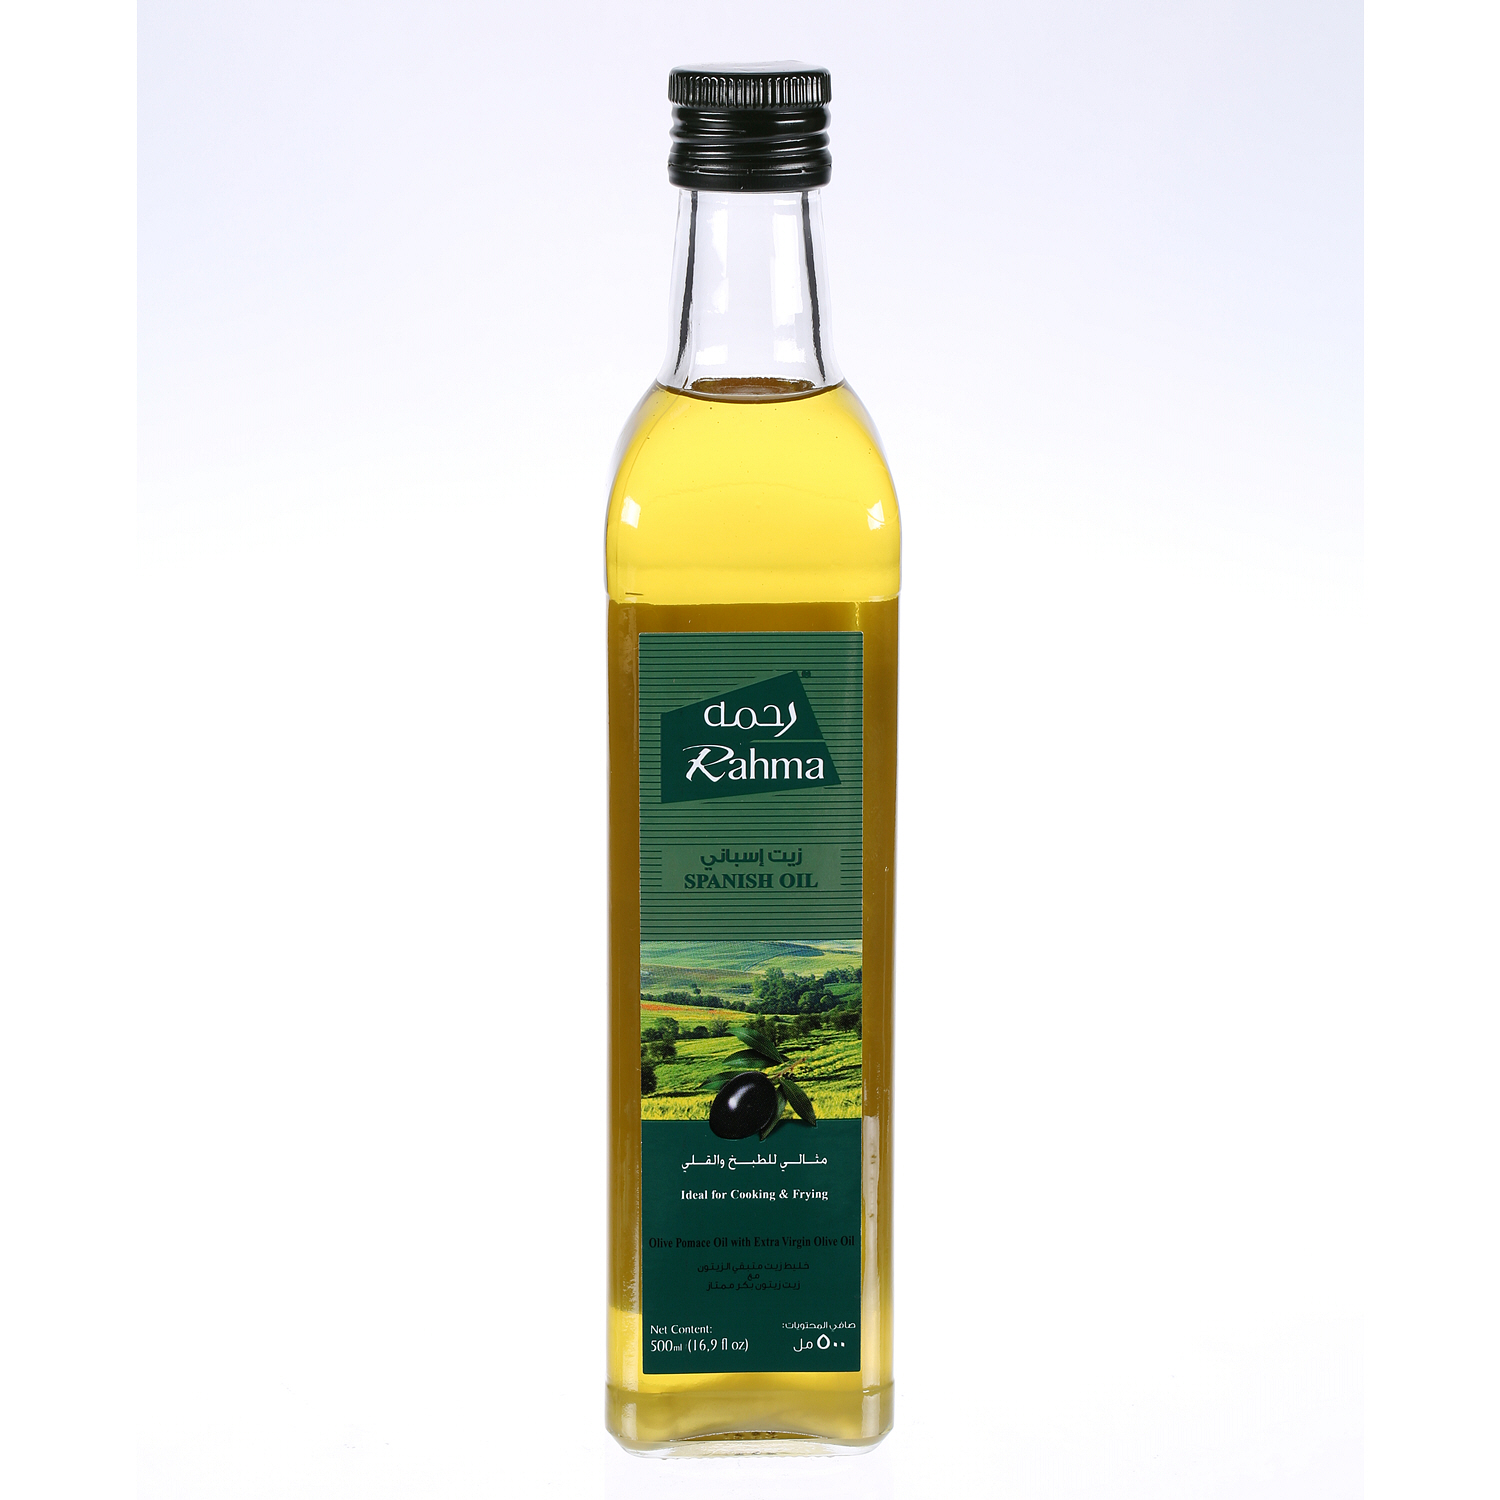 Rahma Virgin Olive Oil Glass Bottle 500 ml